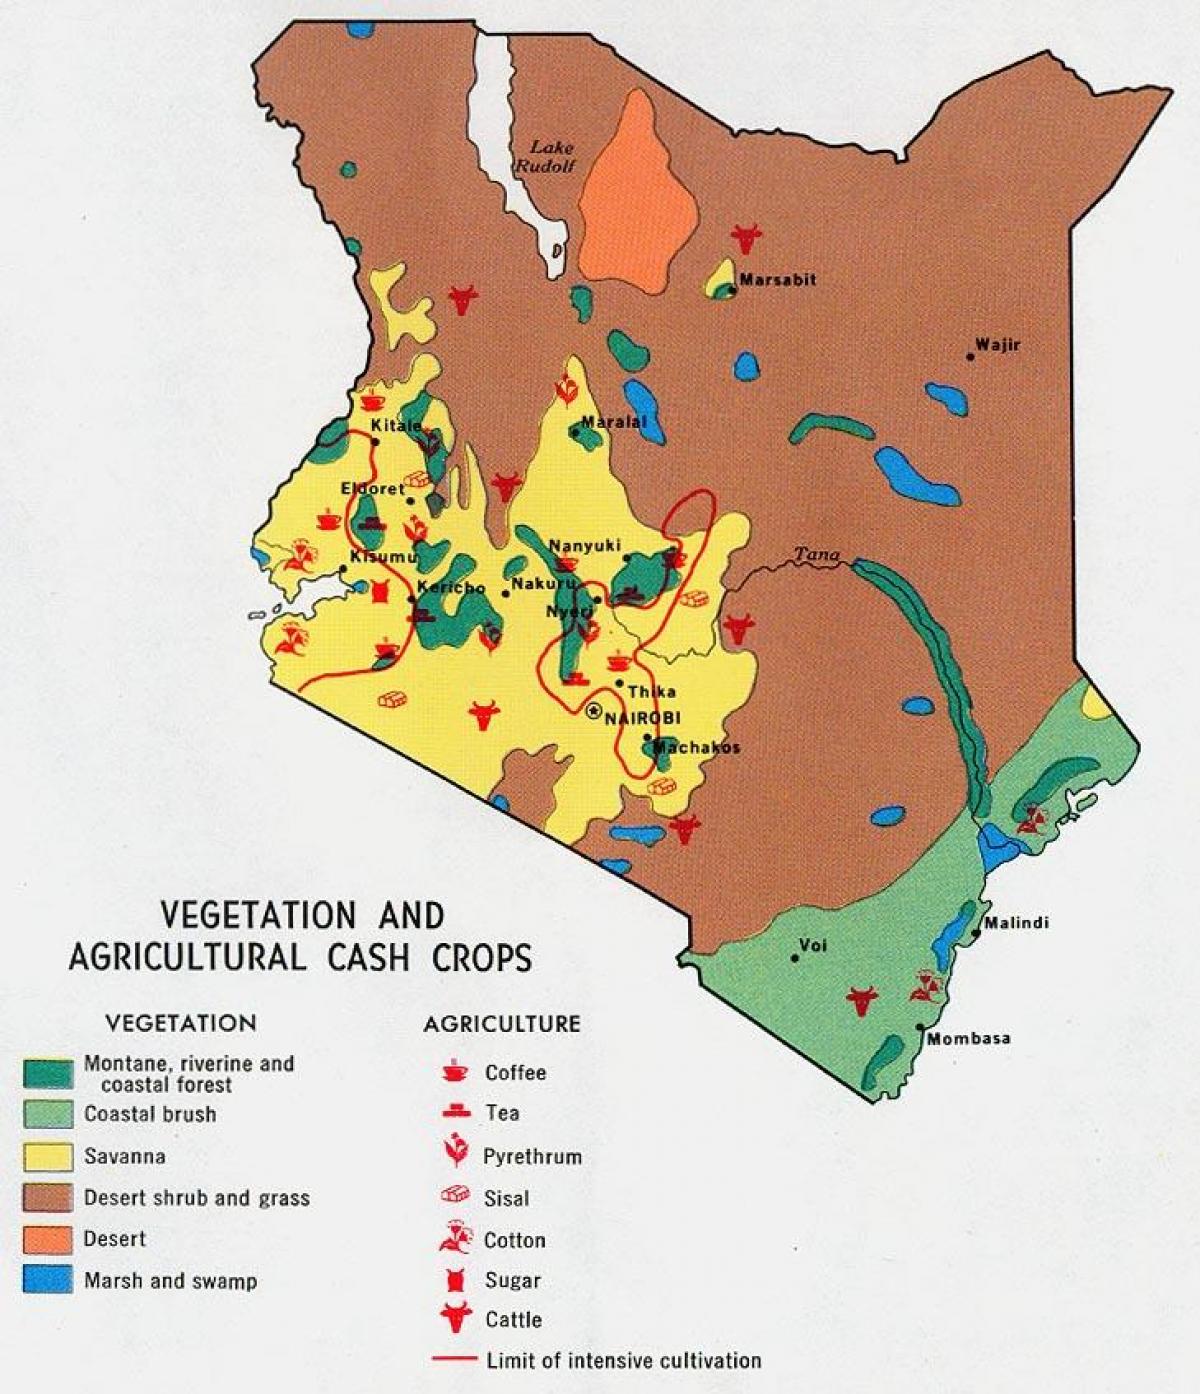 χάρτης της Κένυας φυσικών πόρων